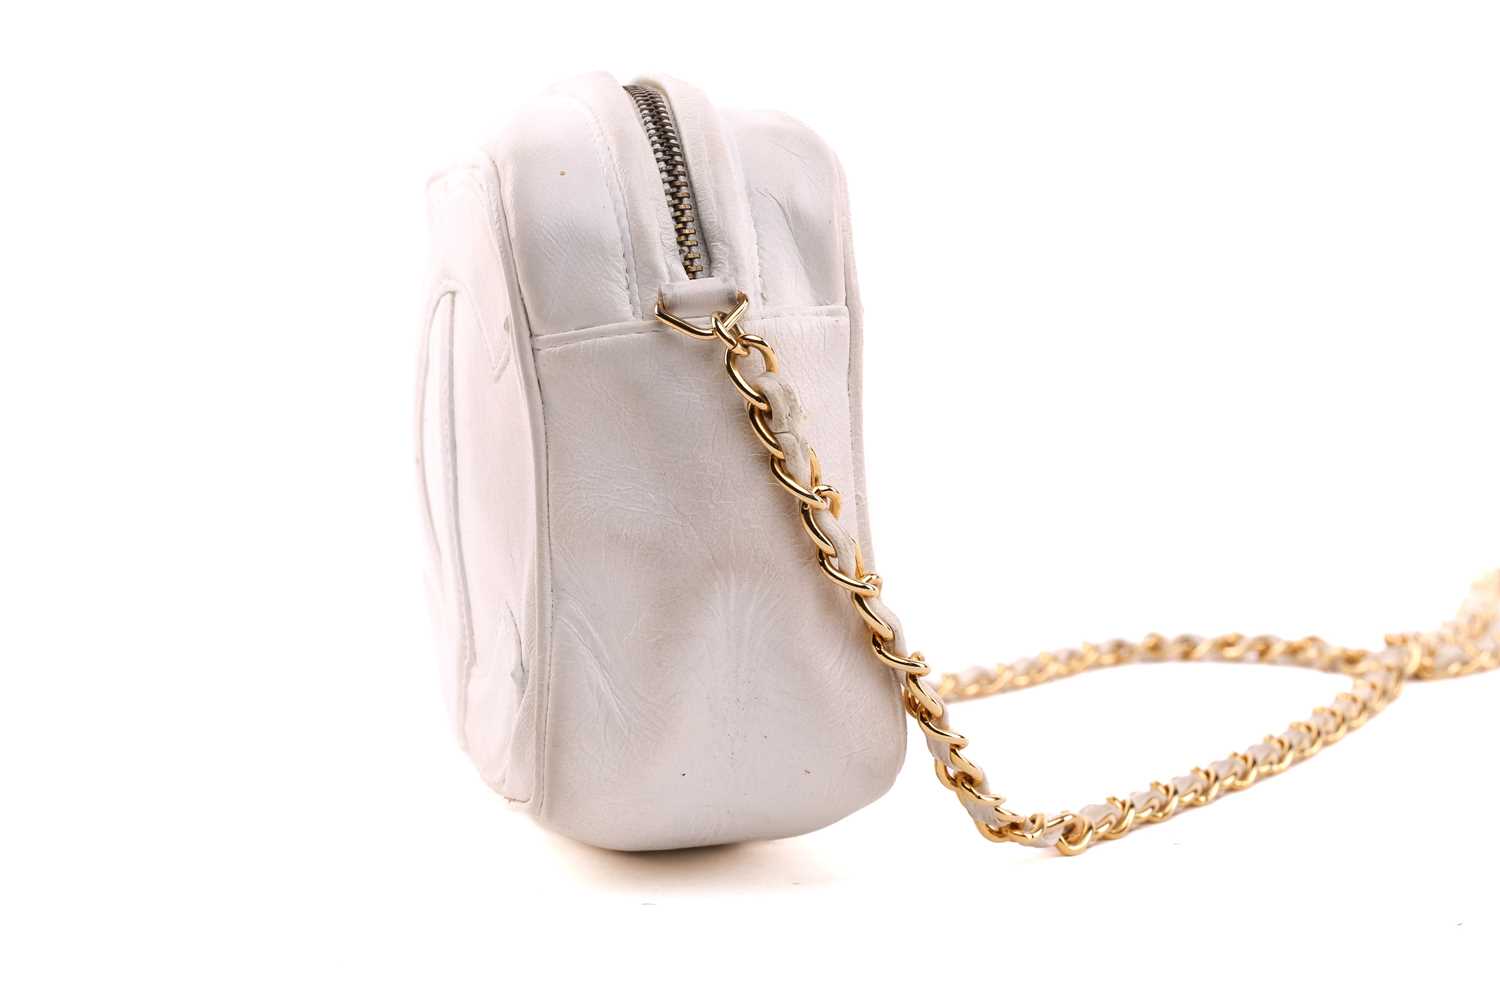 Chanel - a mini camera bag in white leather, circa 1986, interlocking 'CC' logo appliqué on the - Image 6 of 9